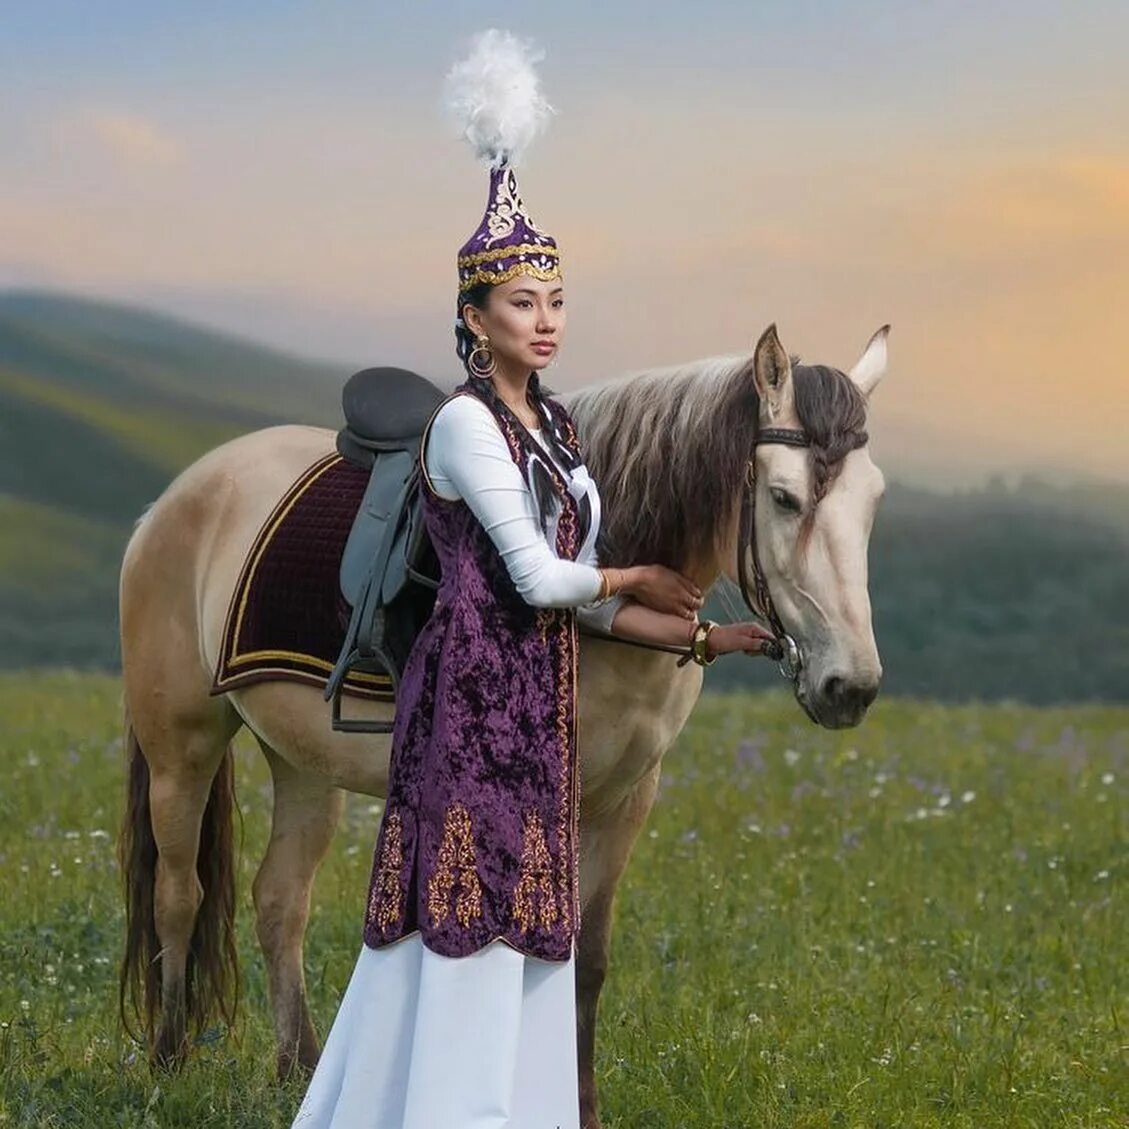 Девушка в казахском костюме. Традиционный казахский костюм. Казахские девушки в национальной одежде. Казахская девушка в национальном костюме. Девушки на коне в национальных казахских нарядах.